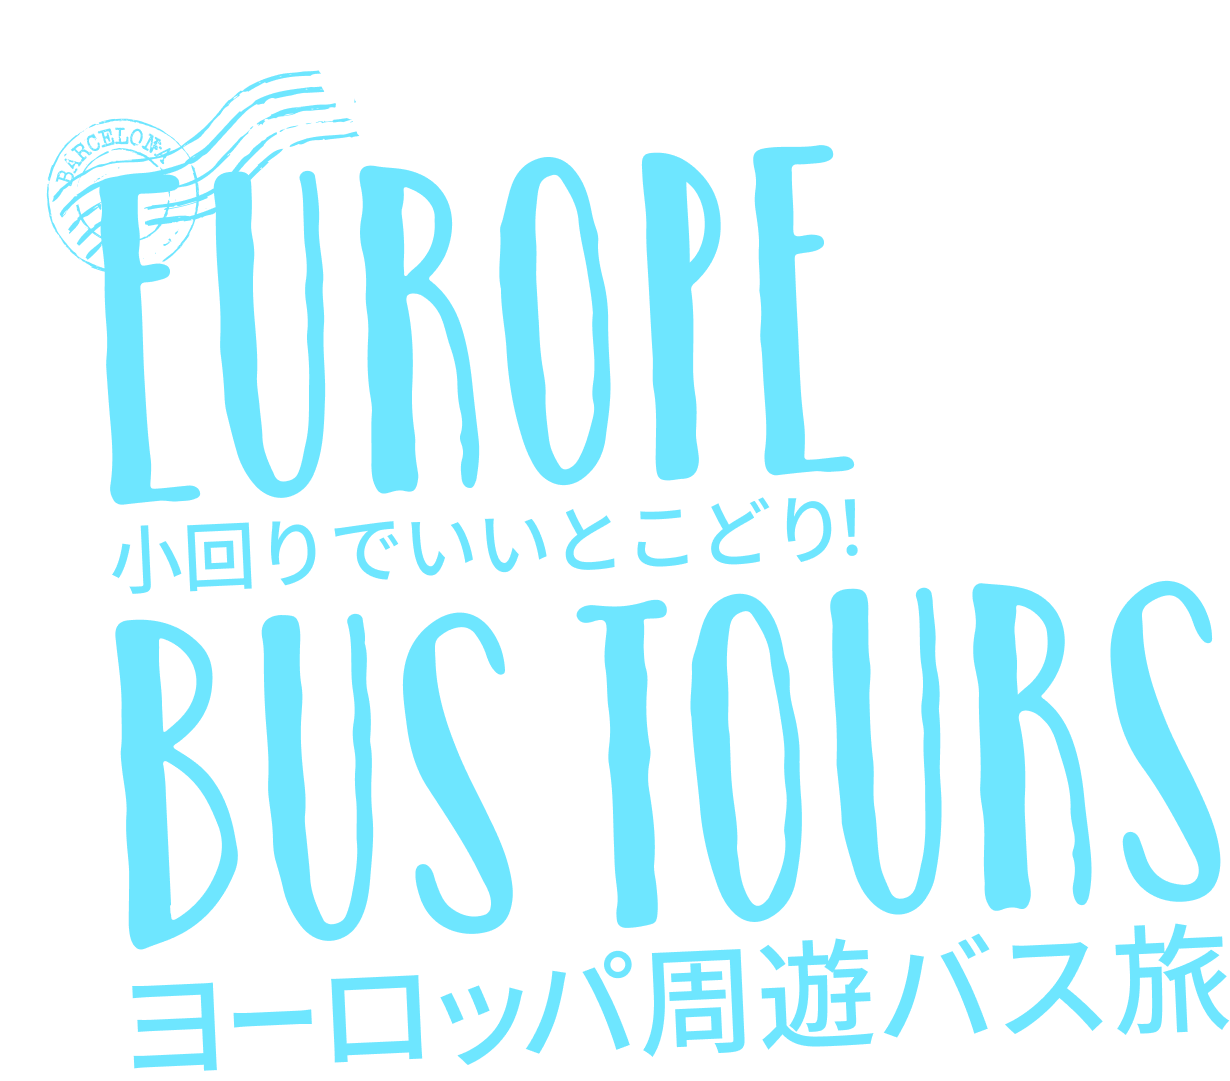 小回りでいいとこどりヨーロッパ周遊バス旅